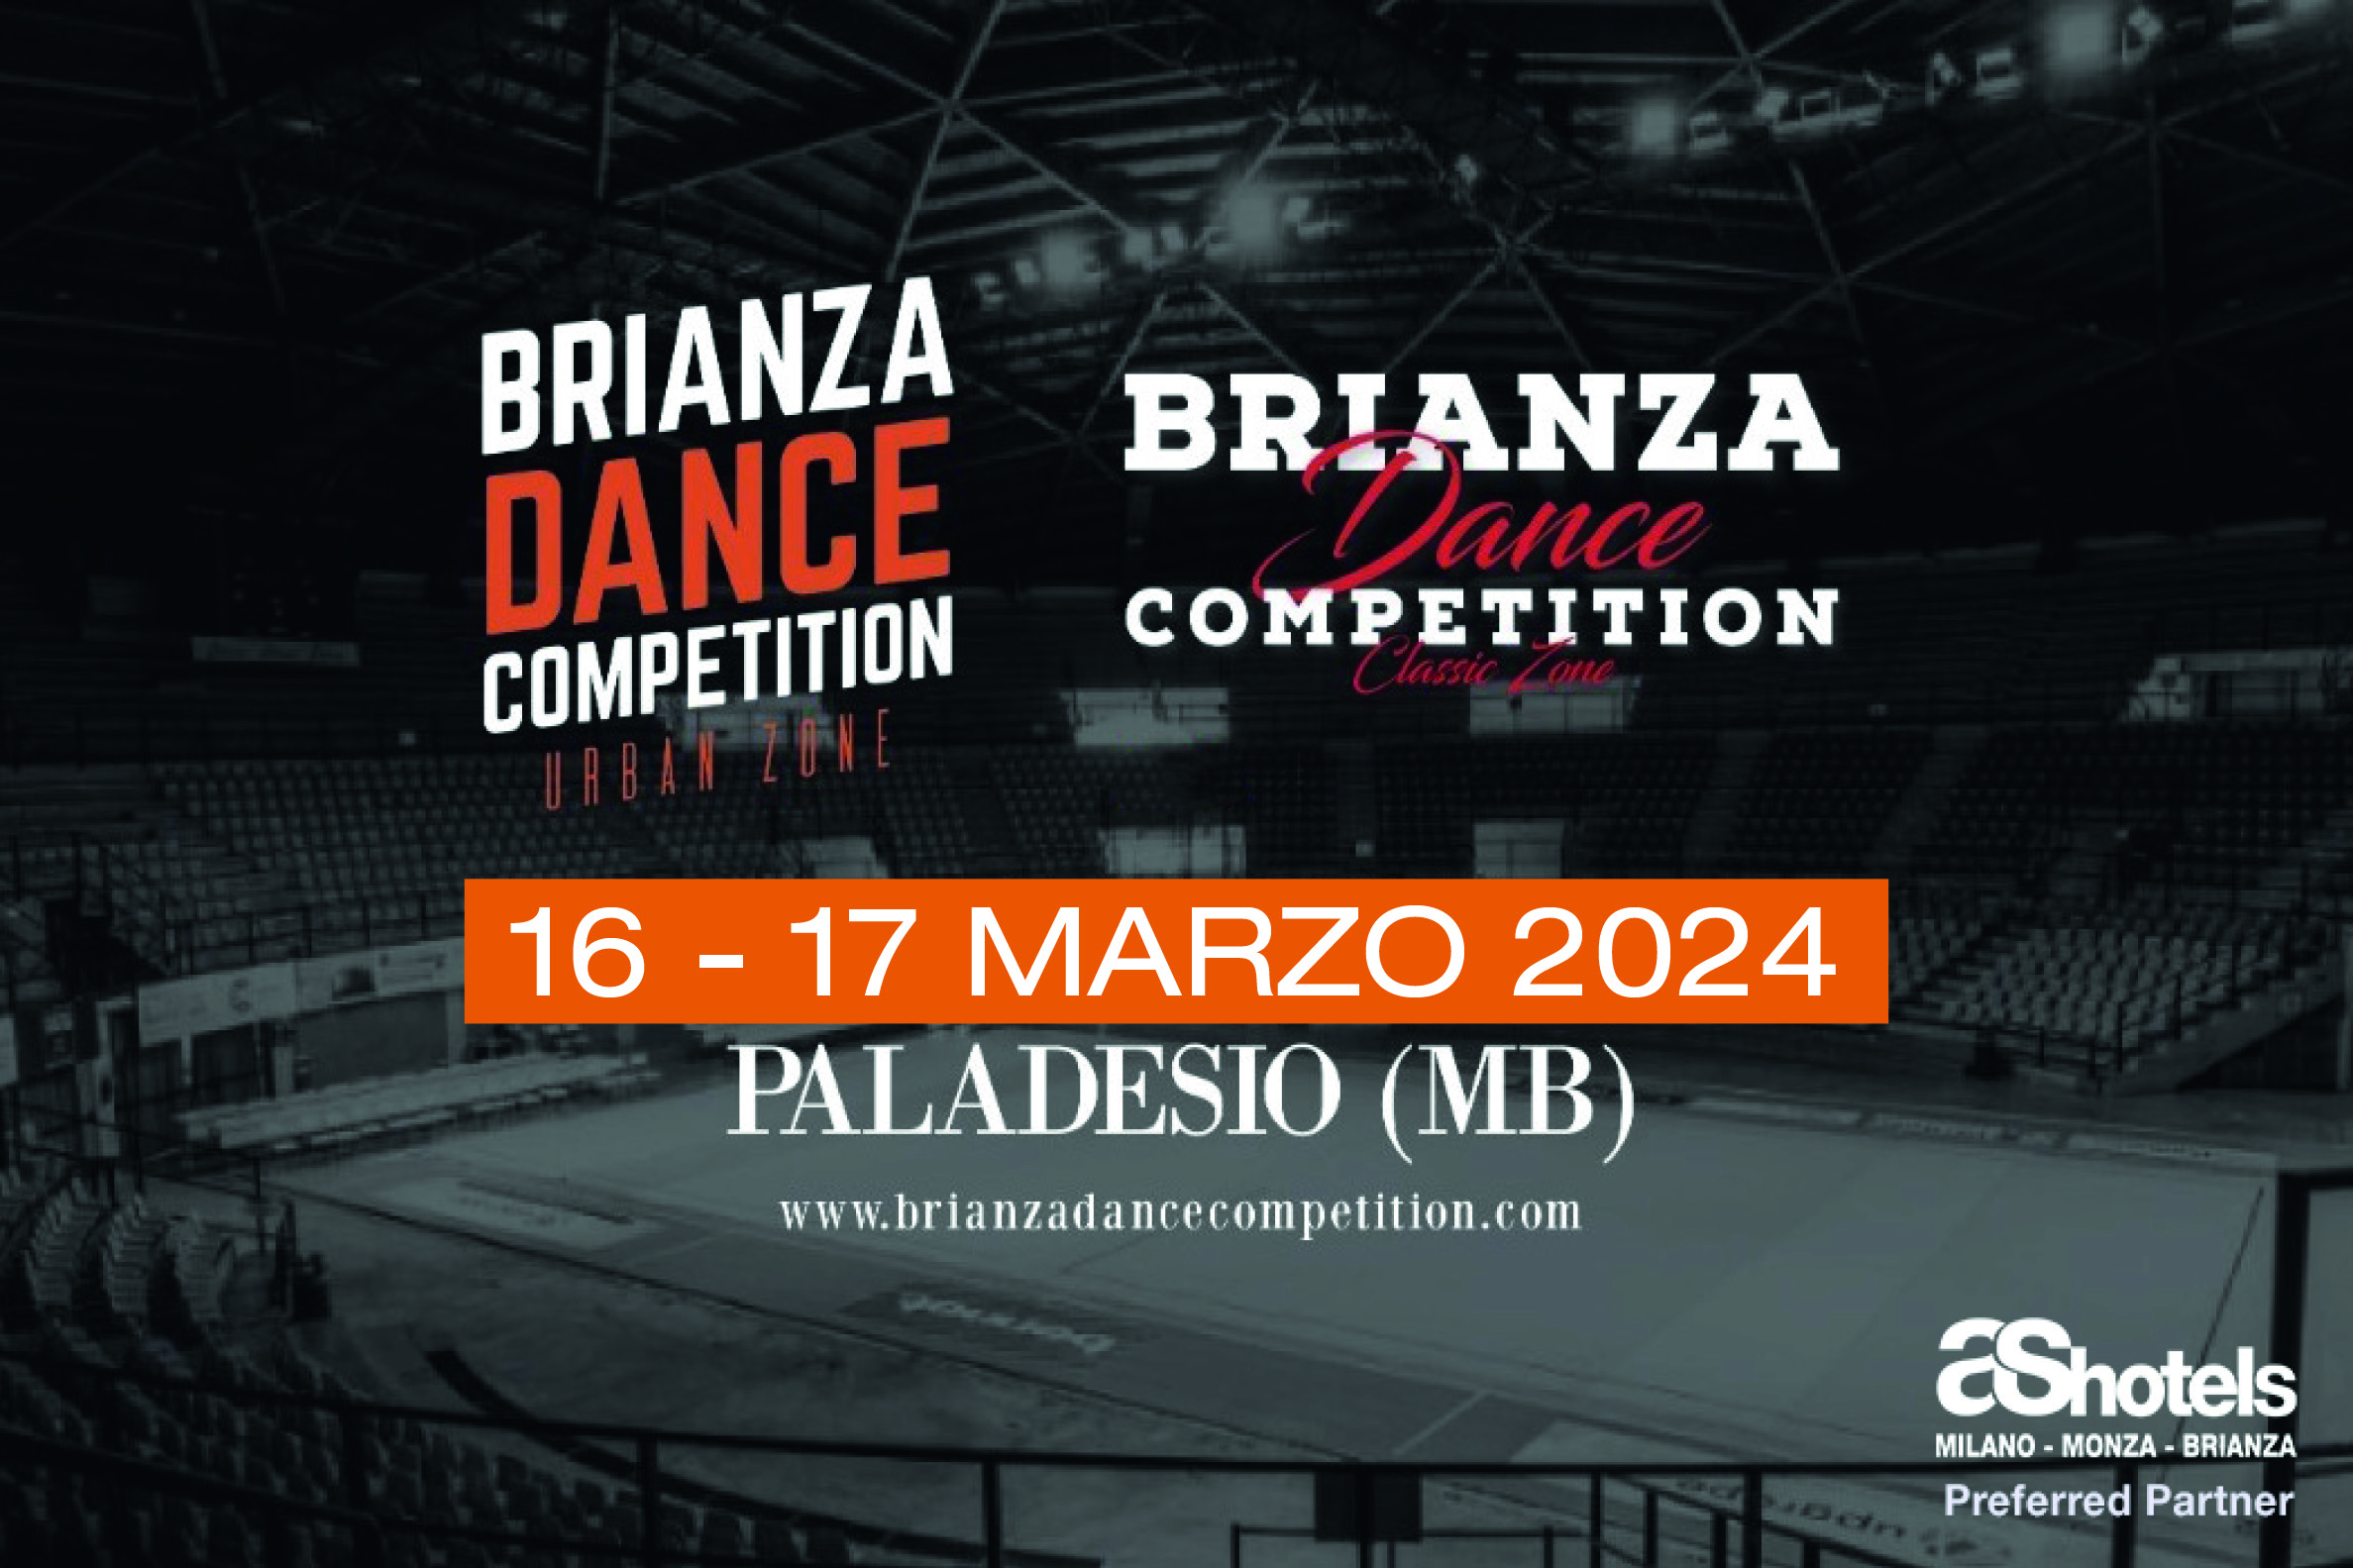 BRIANZA DANCE COMPETITION 2024